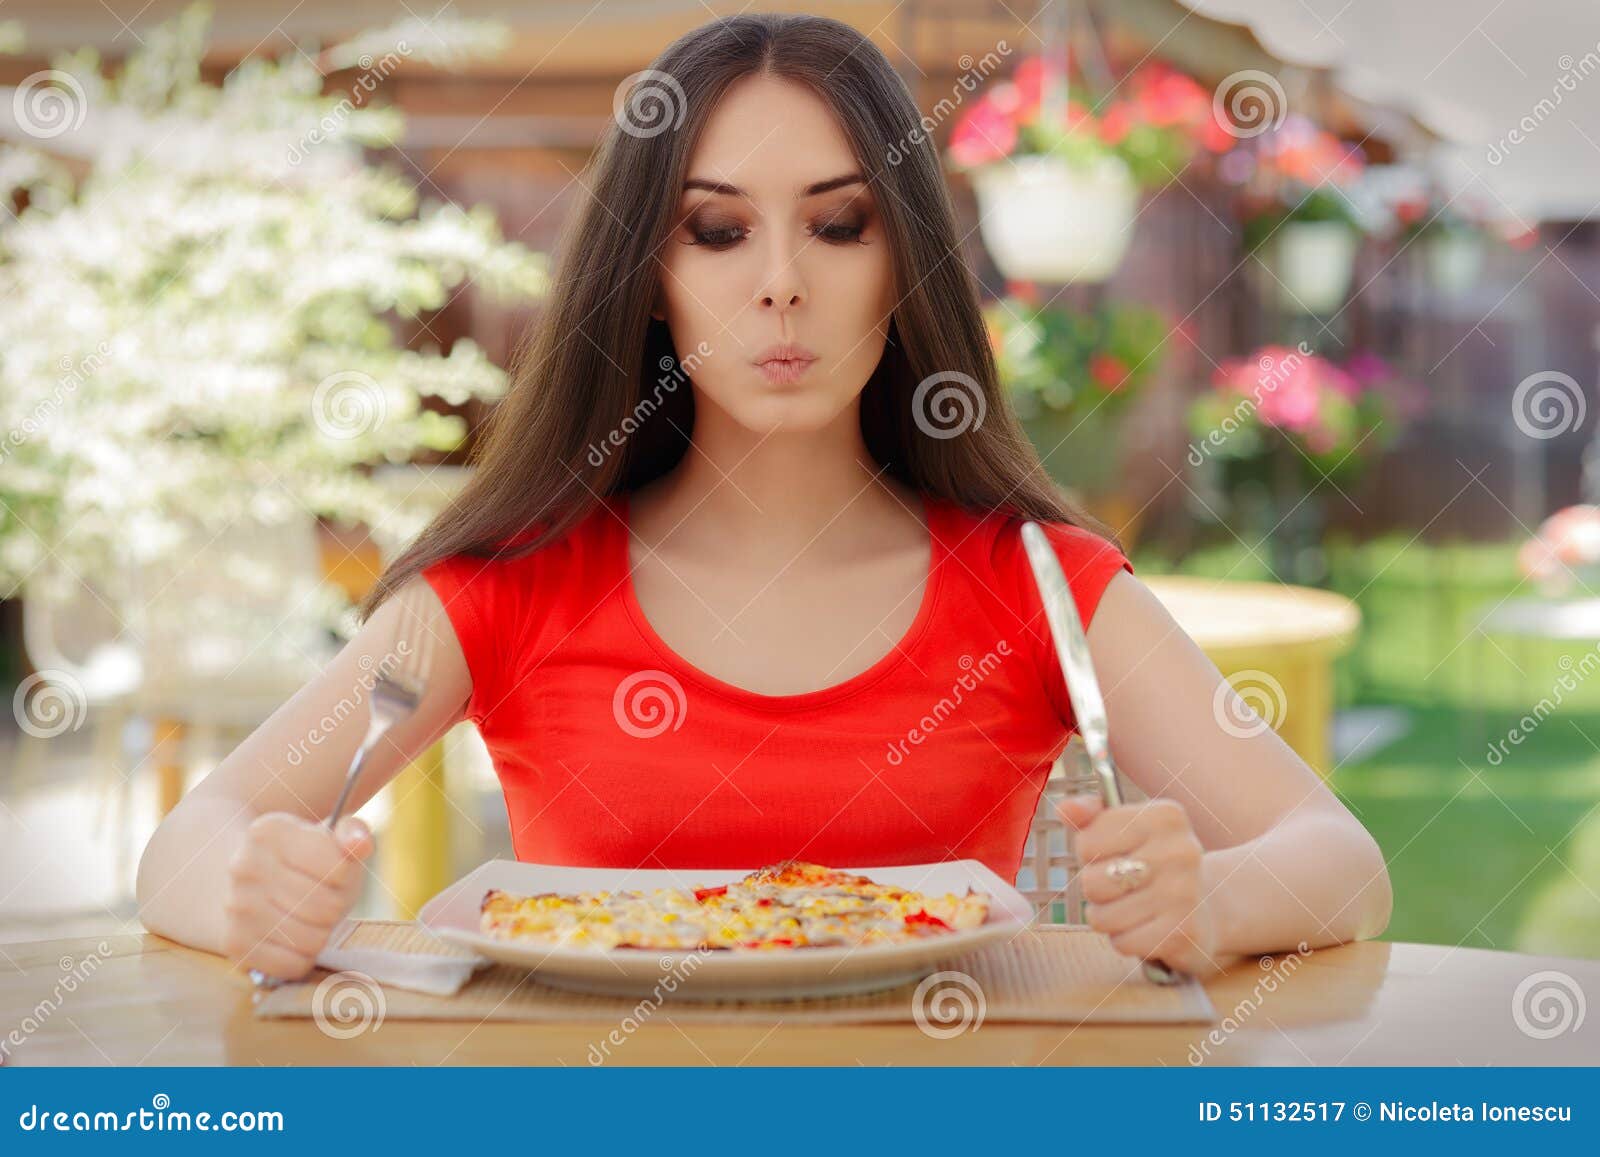 Jeune Femme Pensant à Manger De La Pizza à Un Régime Image